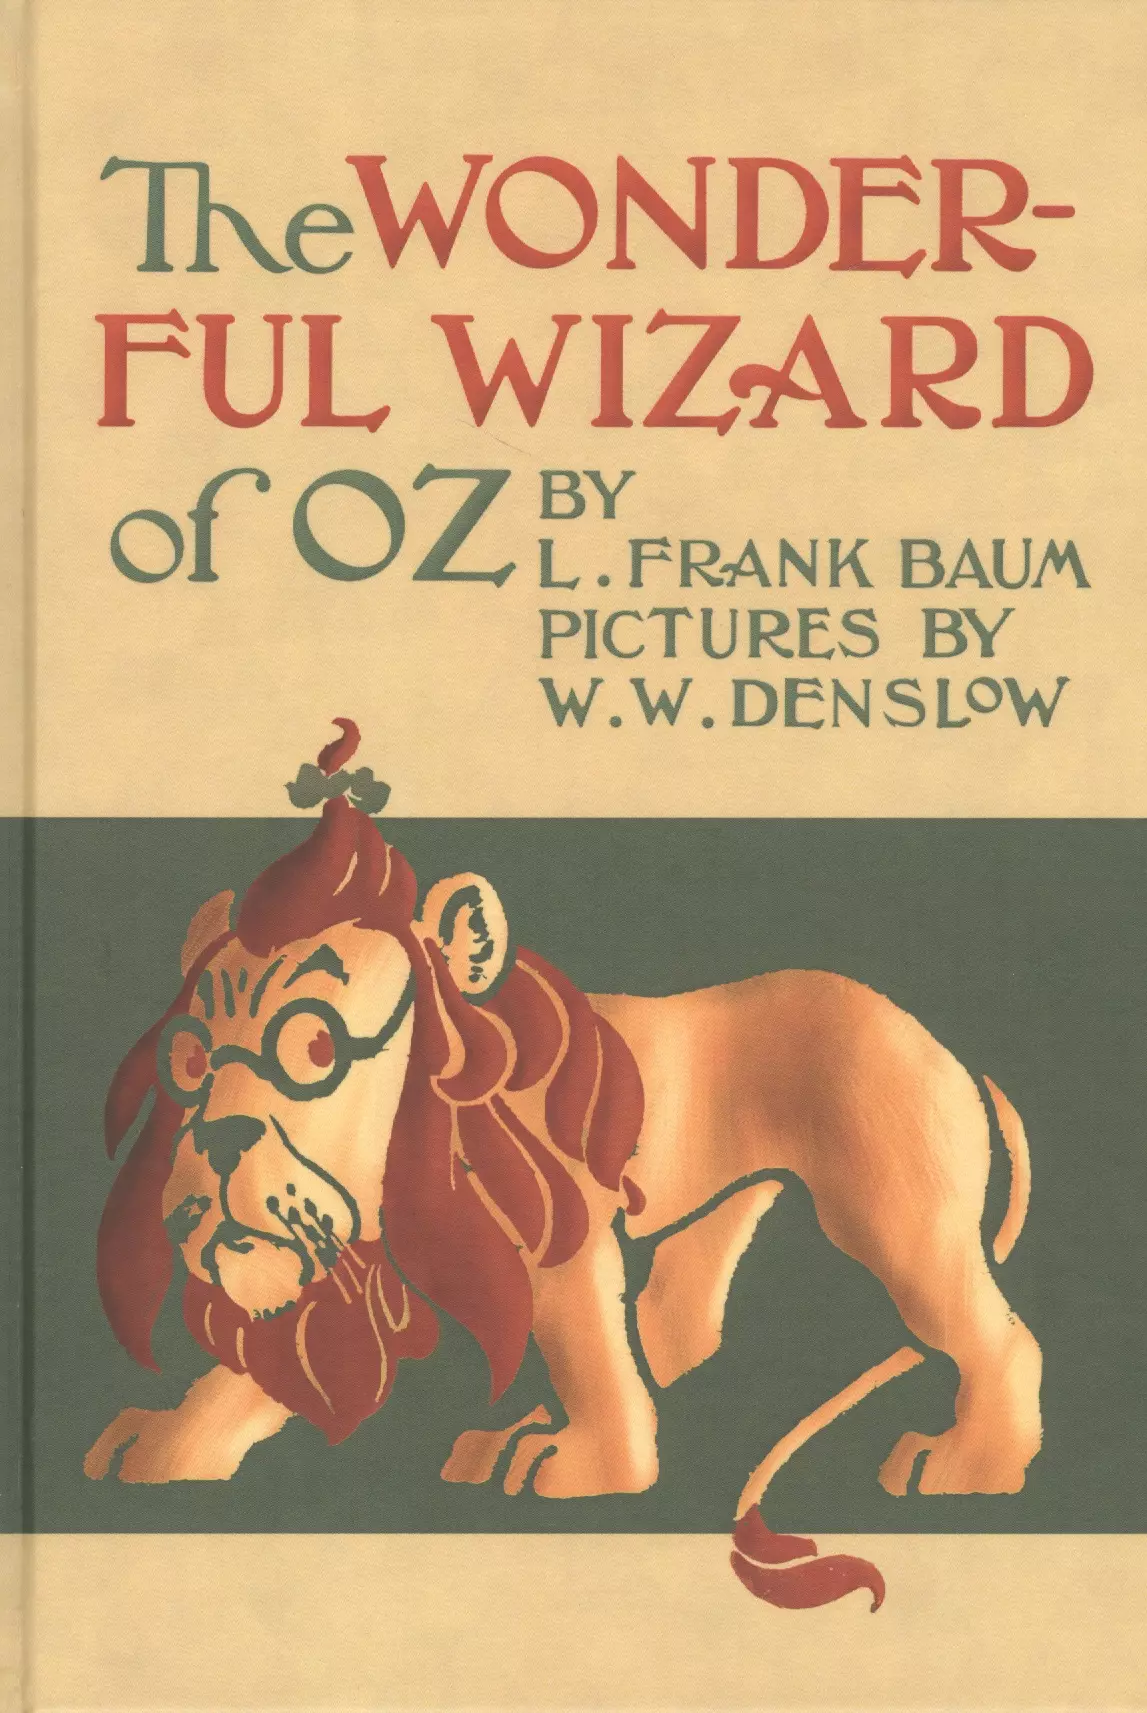 Баум Лаймен Фрэнк - The Wonderful wizard of Oz / Удивительный волшебник из страны Оз. Сказка на английском языке